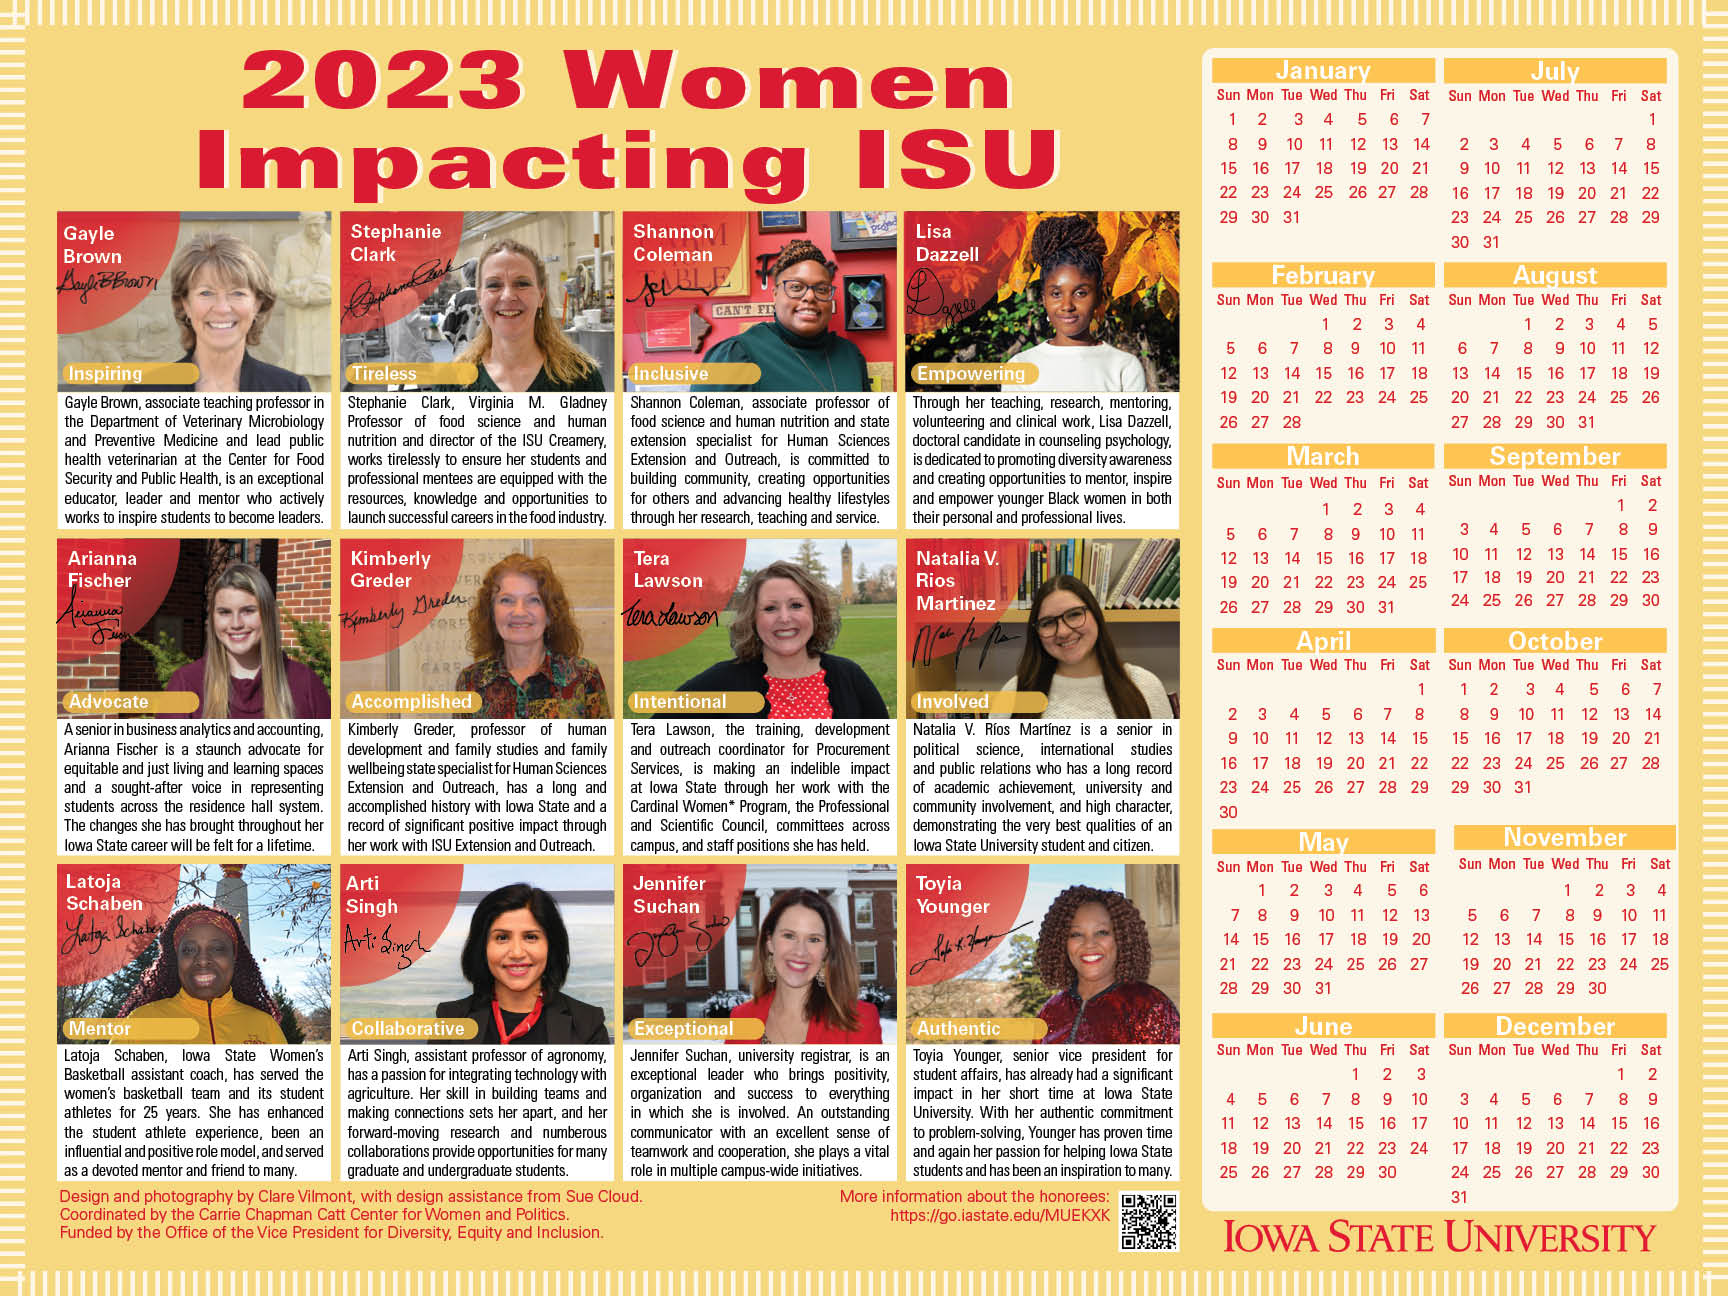 2023 Women Impacting ISU calendar